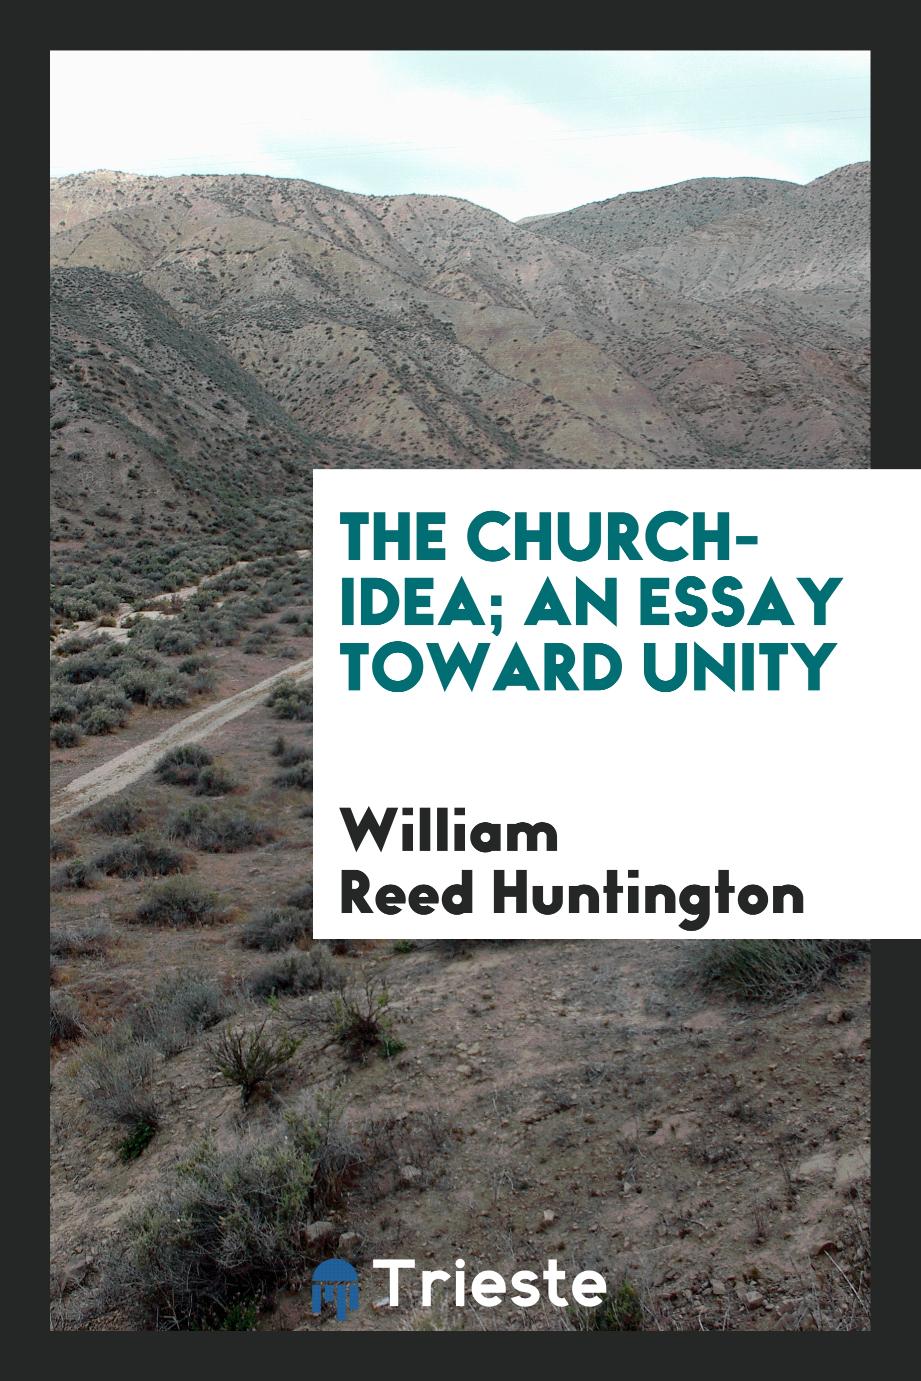 The church-idea; an essay toward unity